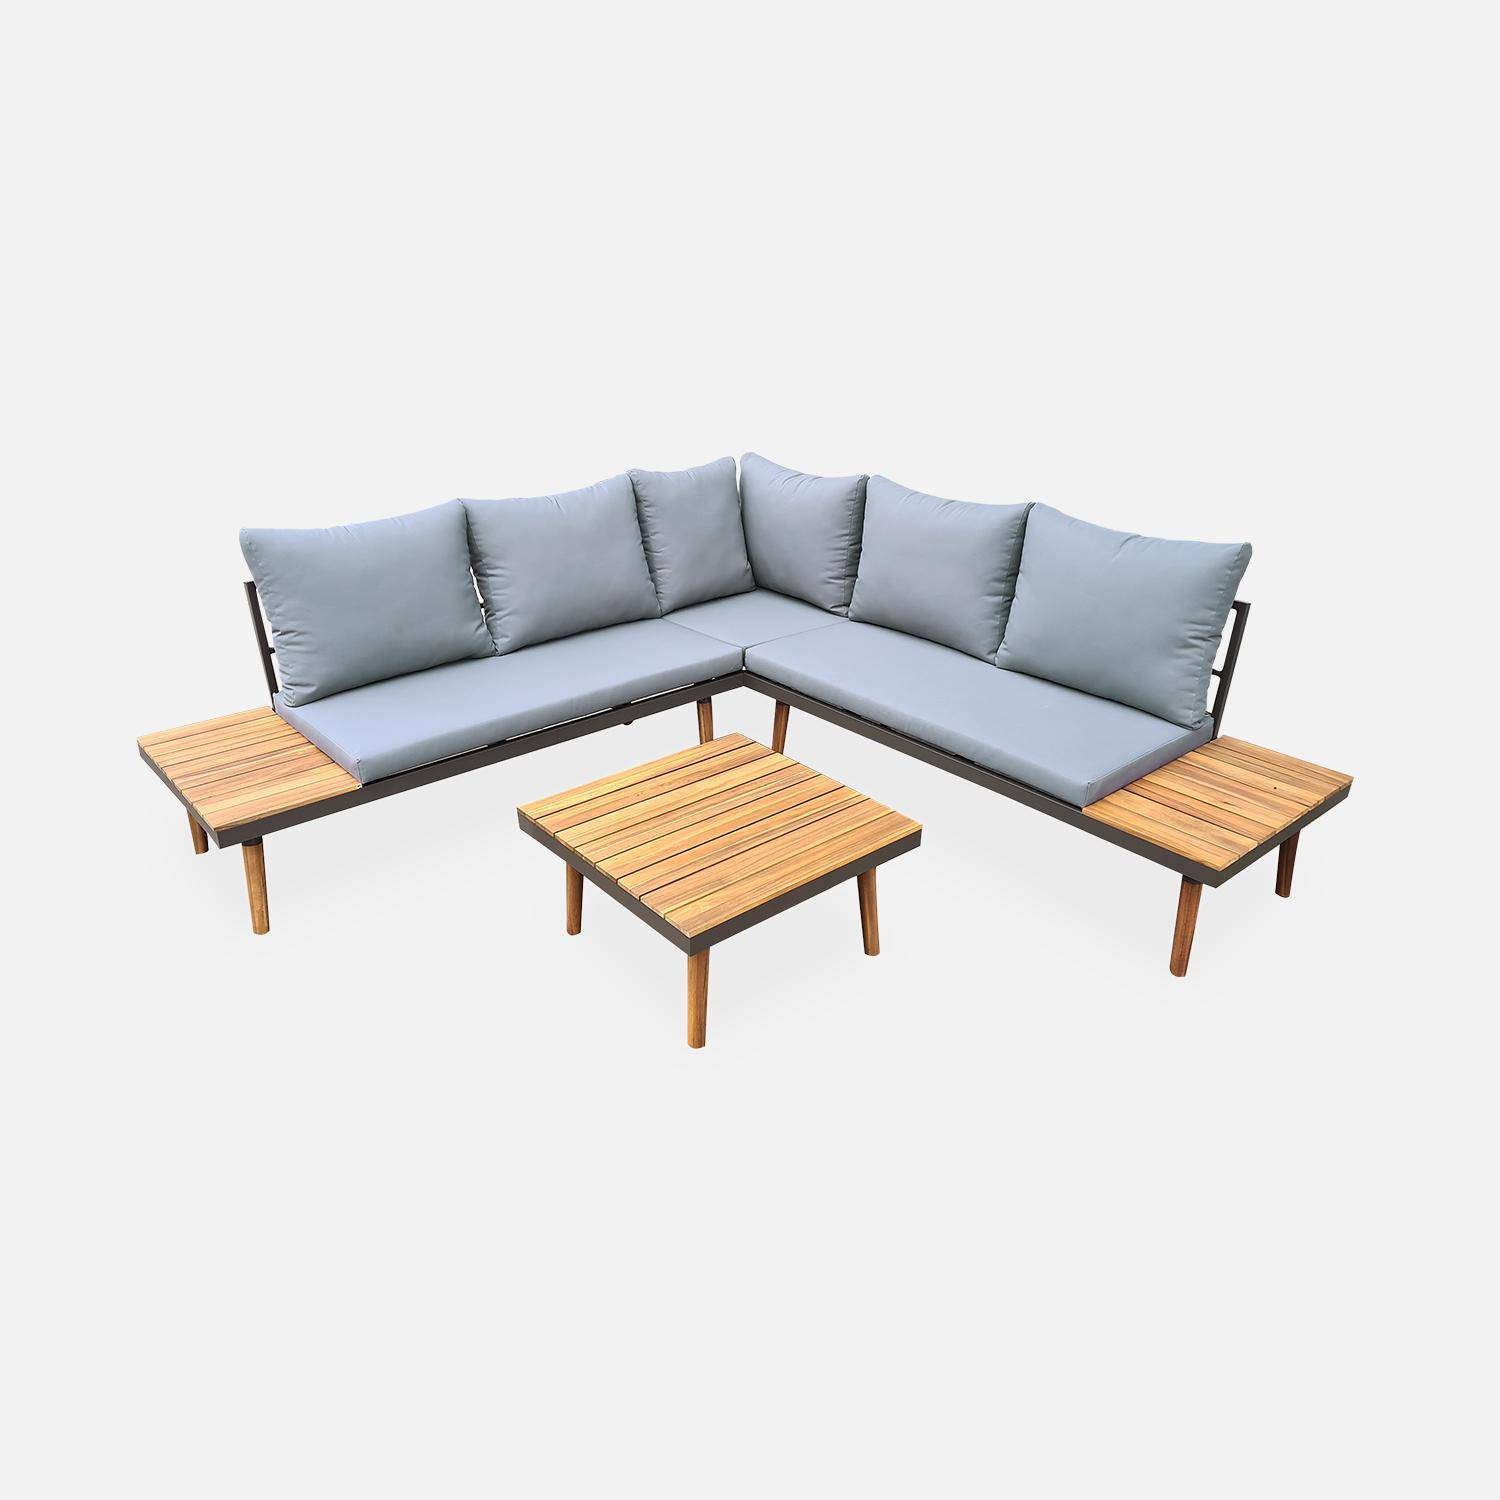 Conjunto de muebles de jardín de madera de 4 plazas - Cachi - Cojines grises, sofá de esquina, mesas auxiliares y mesa de centro de acacia, estructura de aluminio, marco escandinavo, diseño Photo1